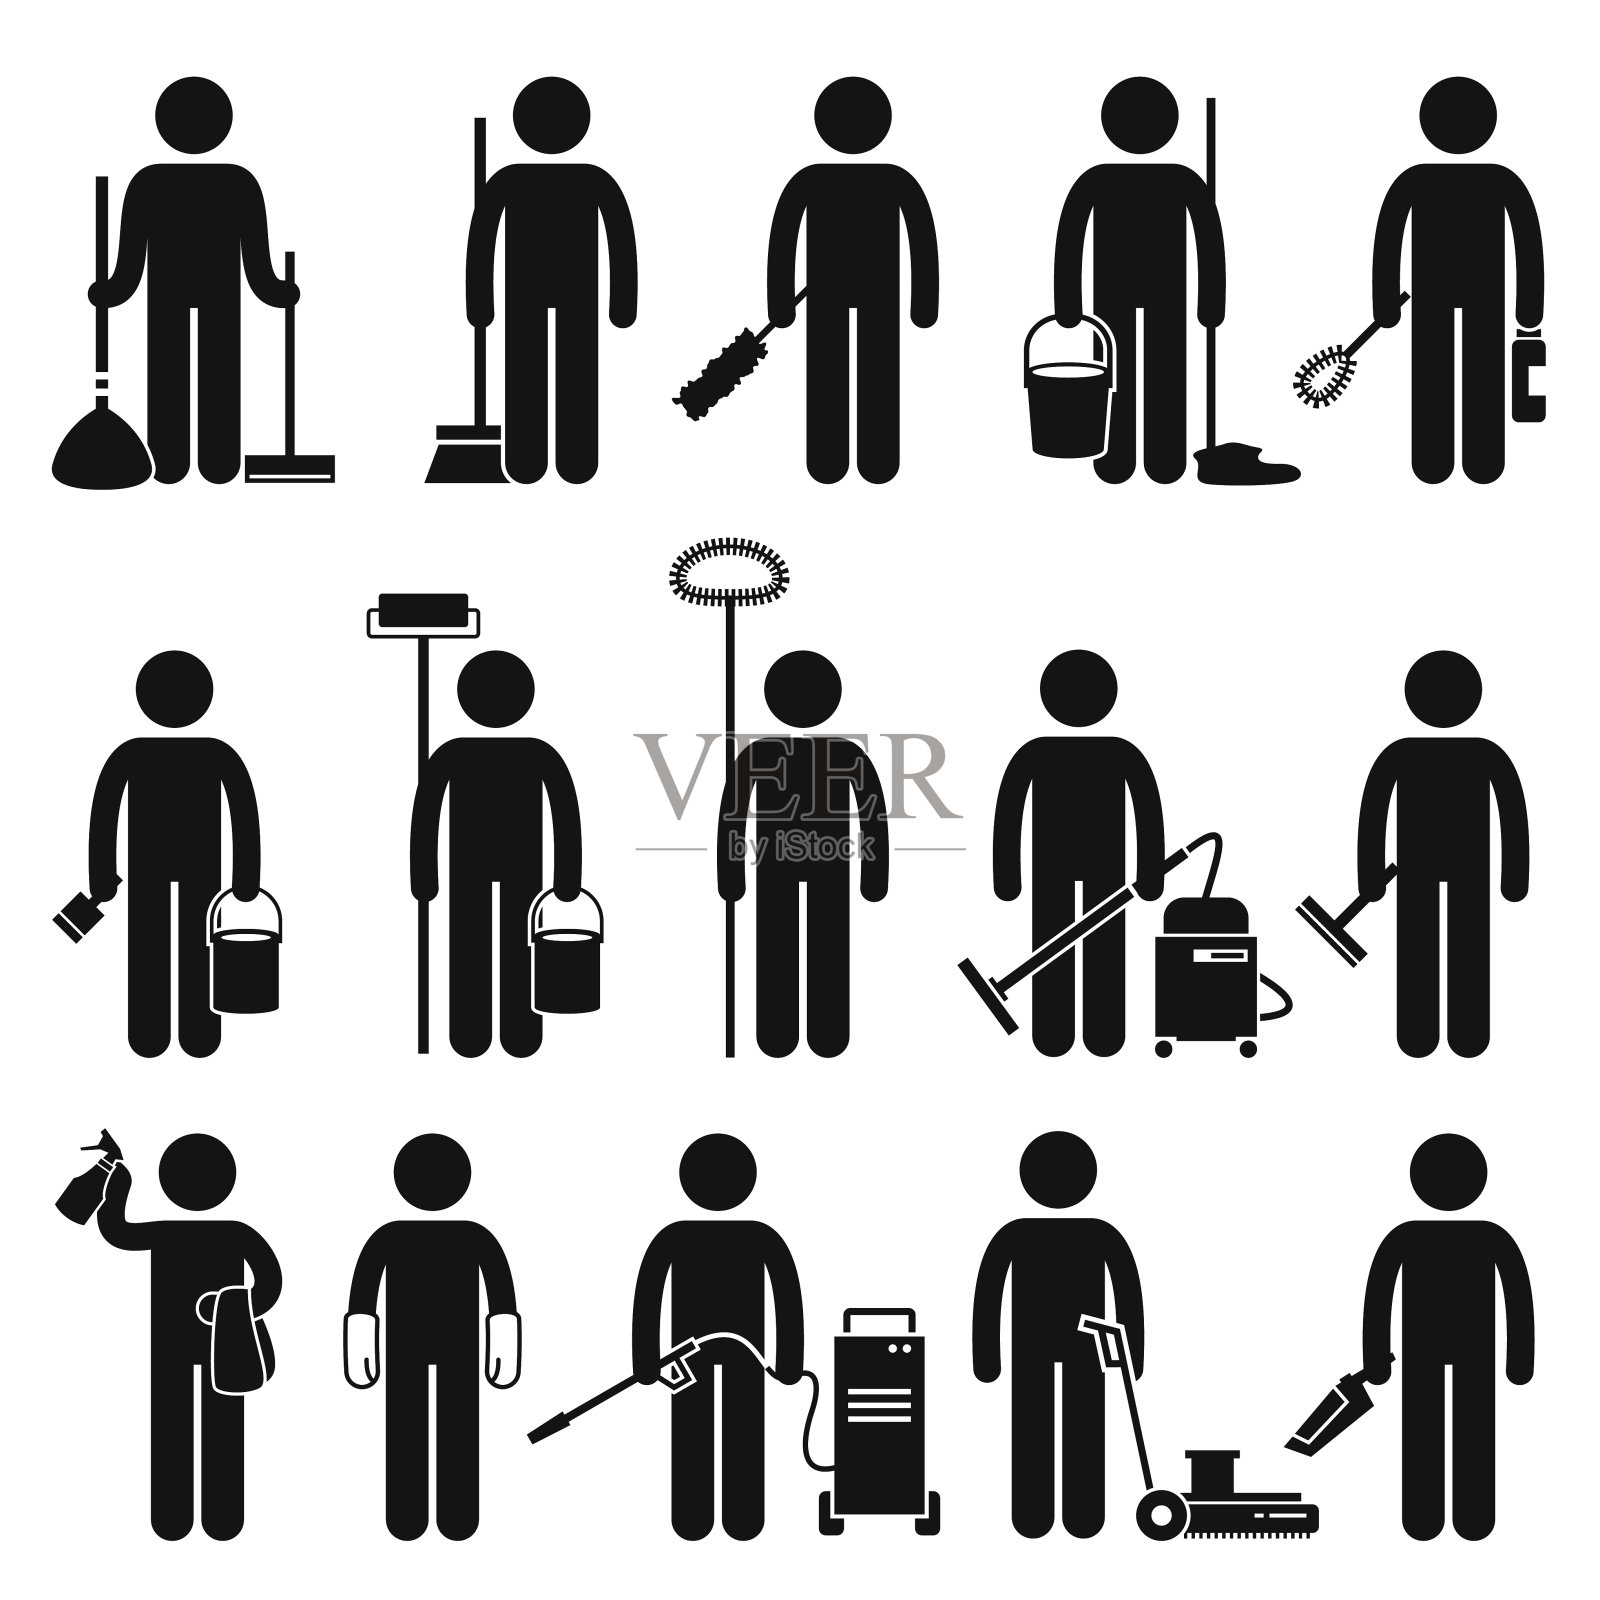 清洁工清洁工具和设备Stick Figure象形图标插画图片素材